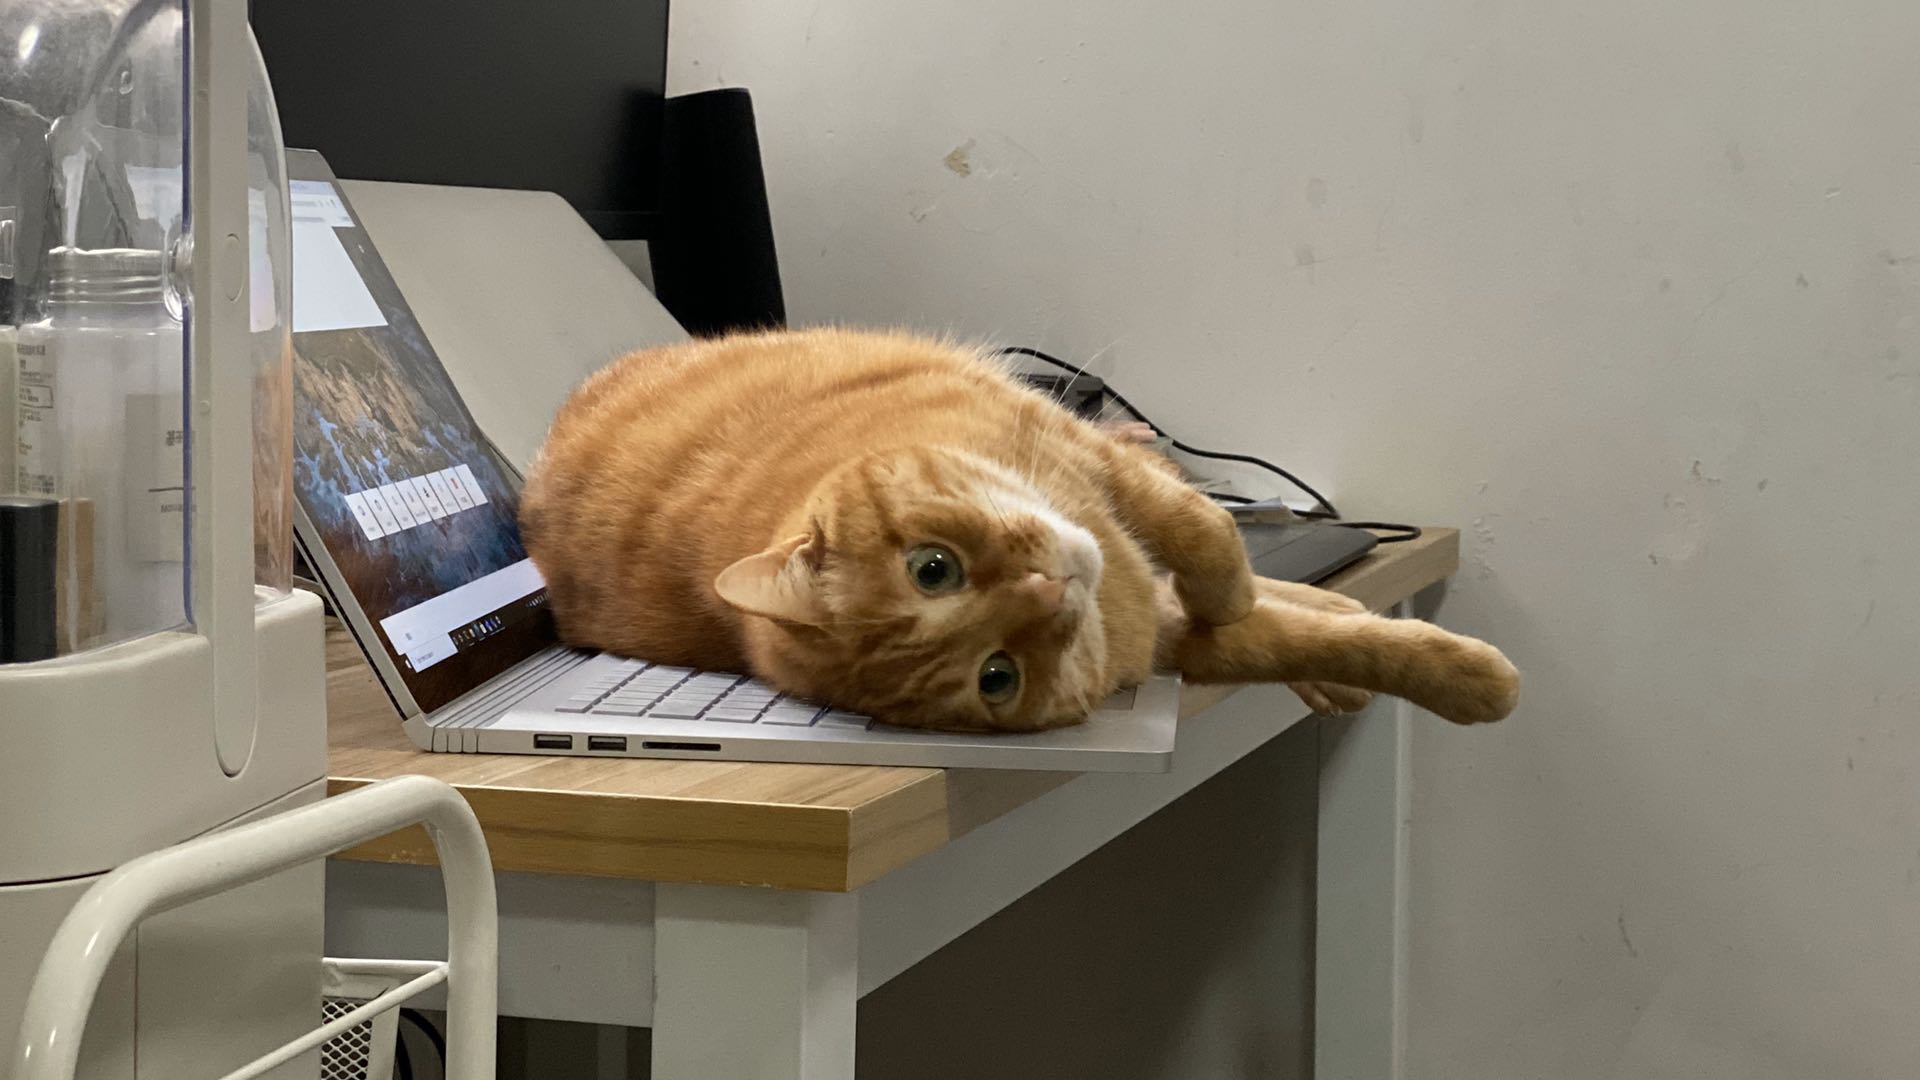 My cat sleep on my keyboard